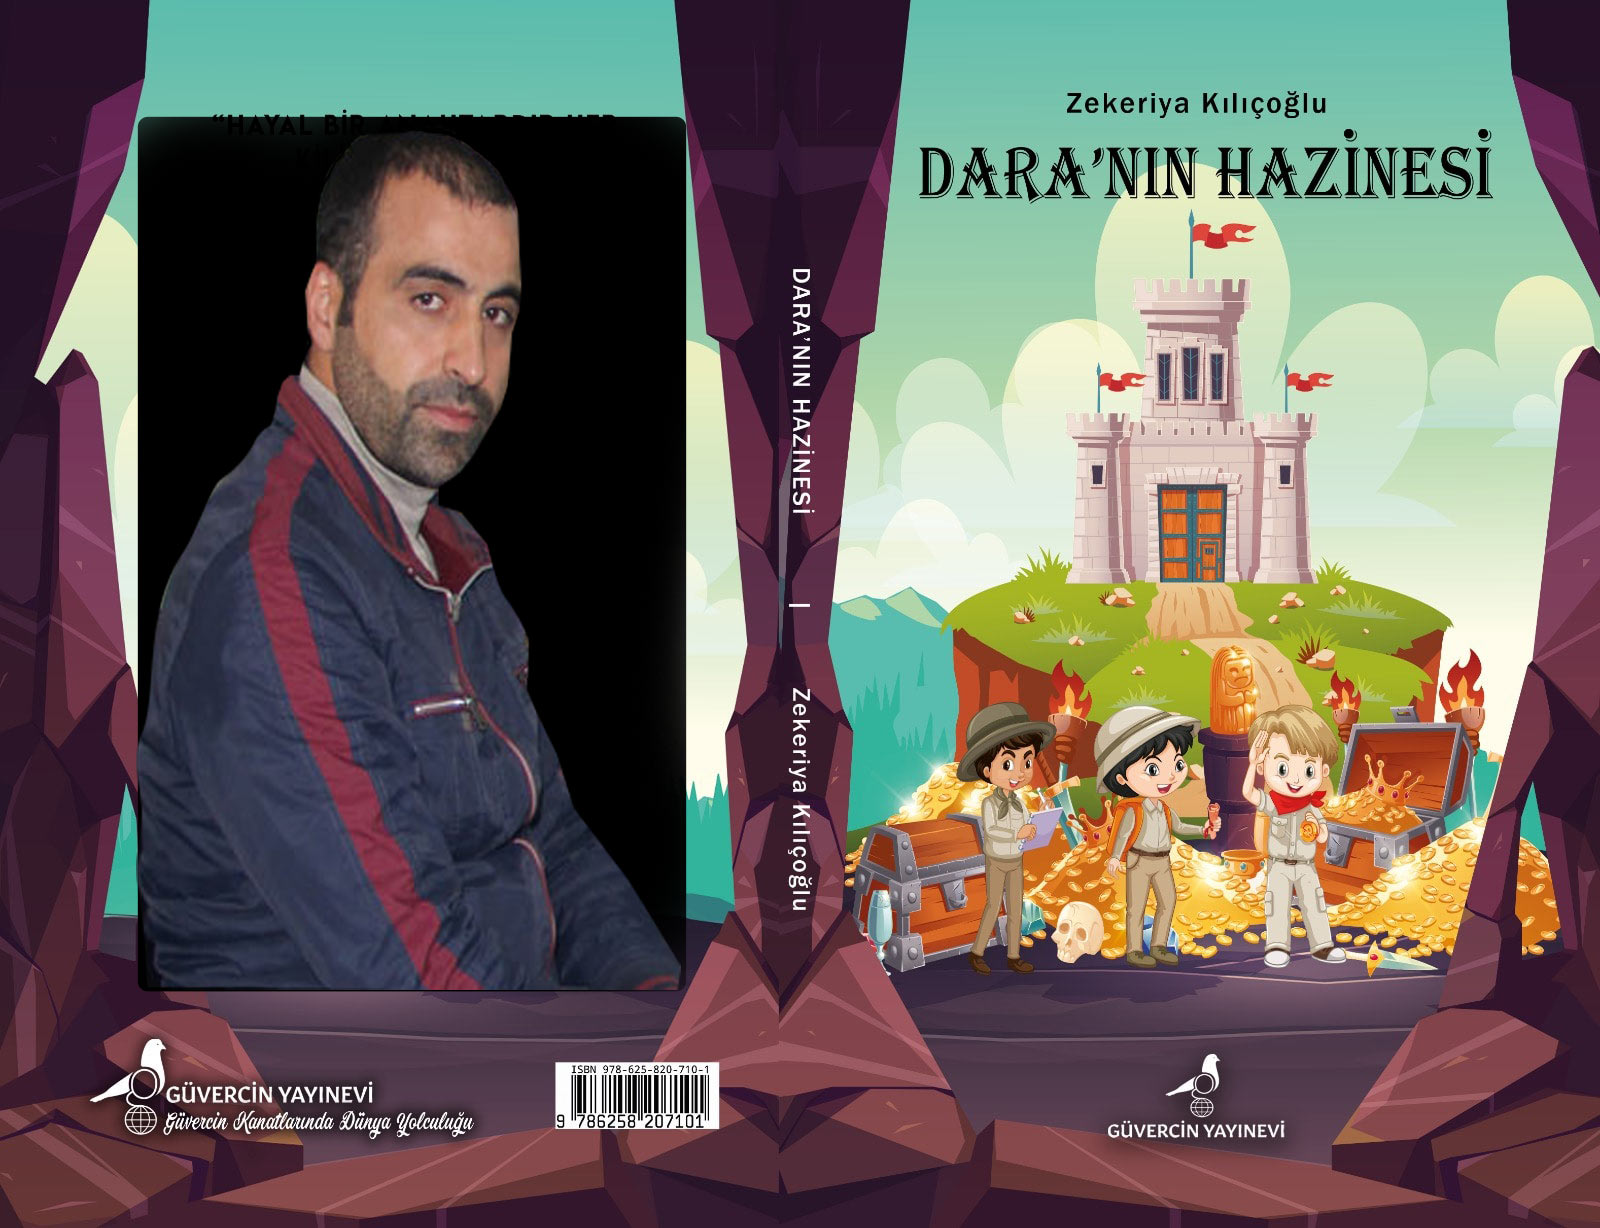 Yazar Kılıçoğlu, Dara’nın Hazinesi’ni yazdı